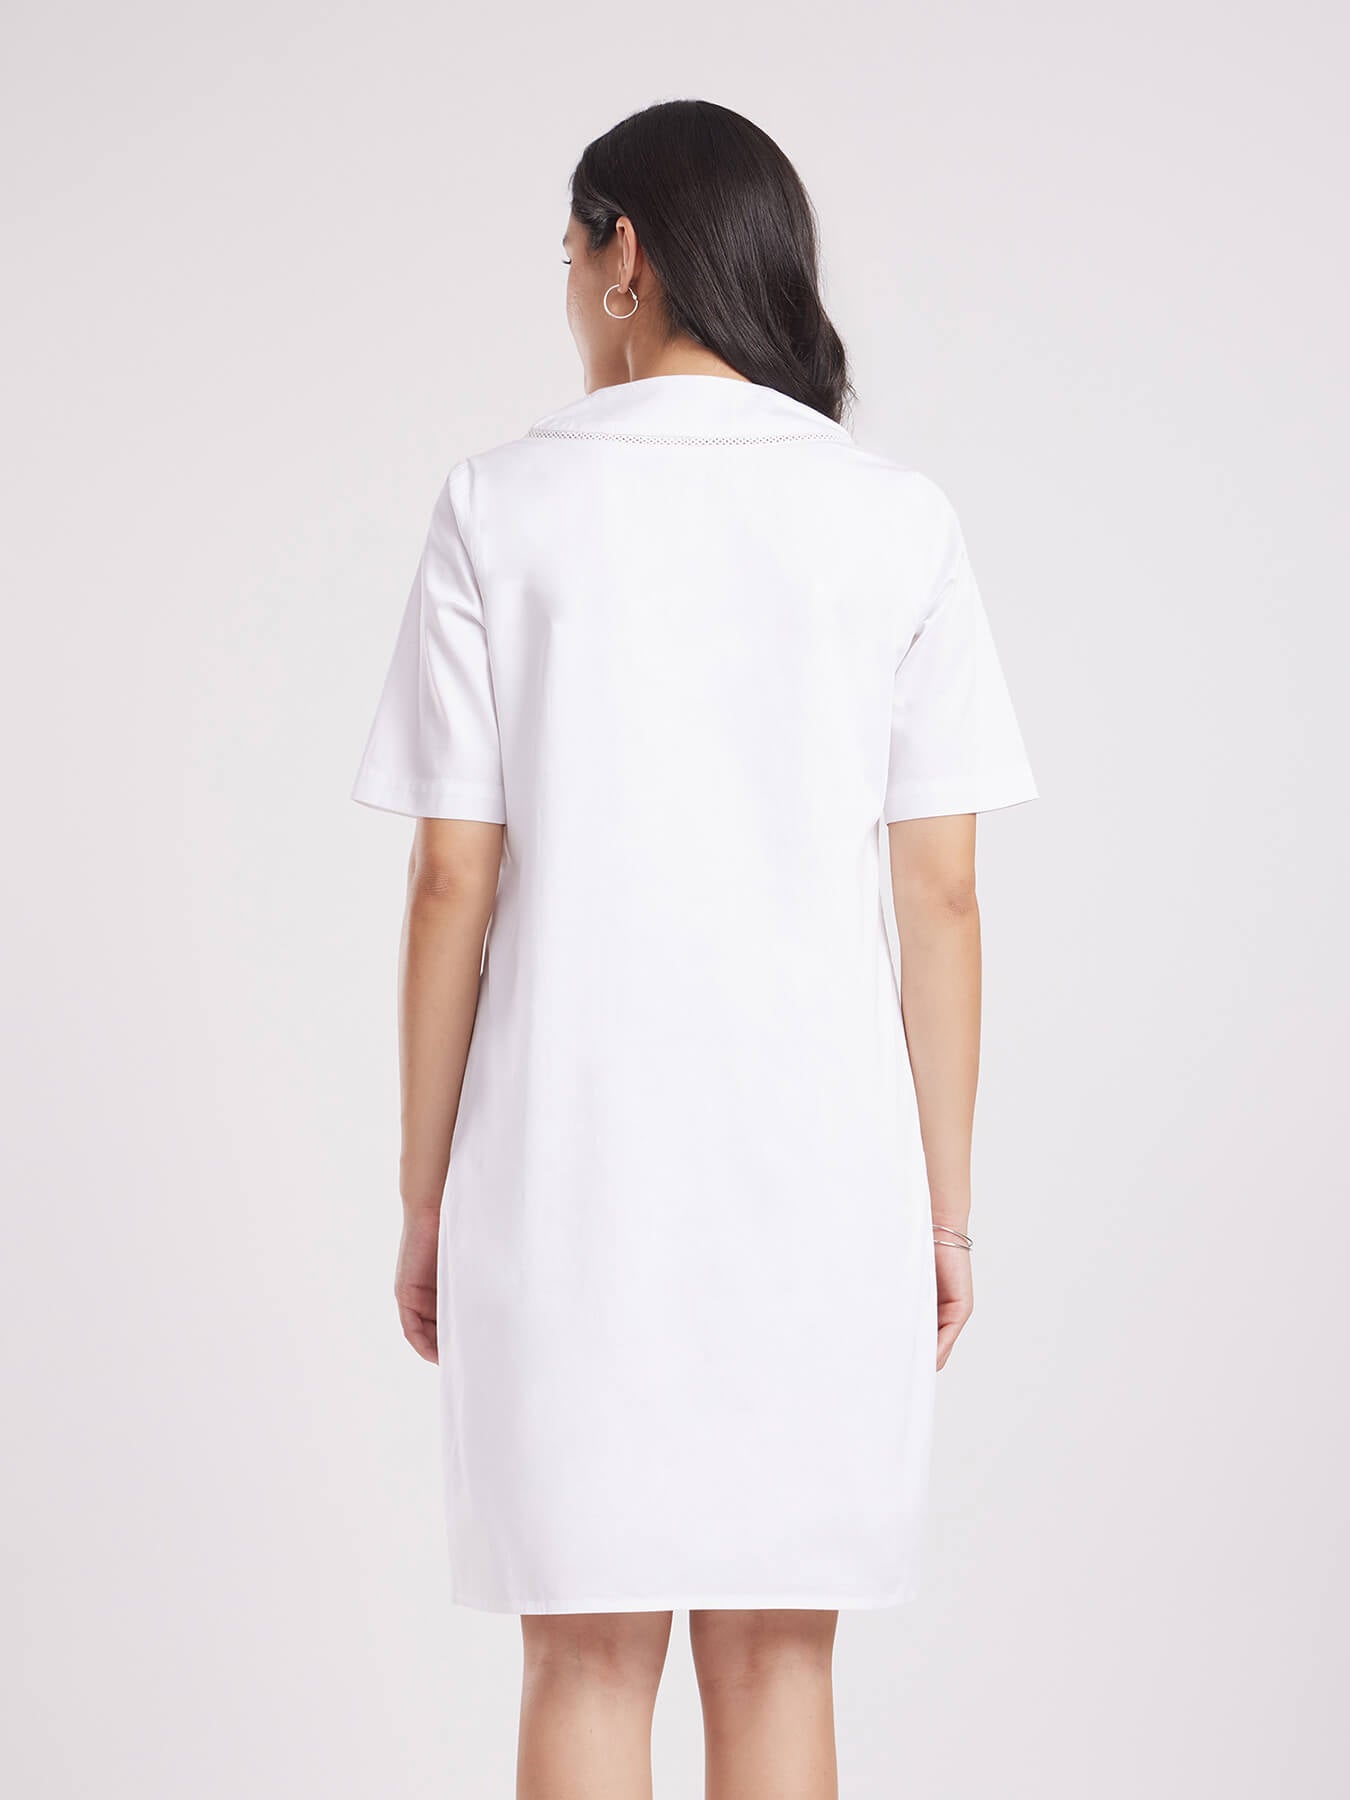 Cotton Satin Lace Dress - White